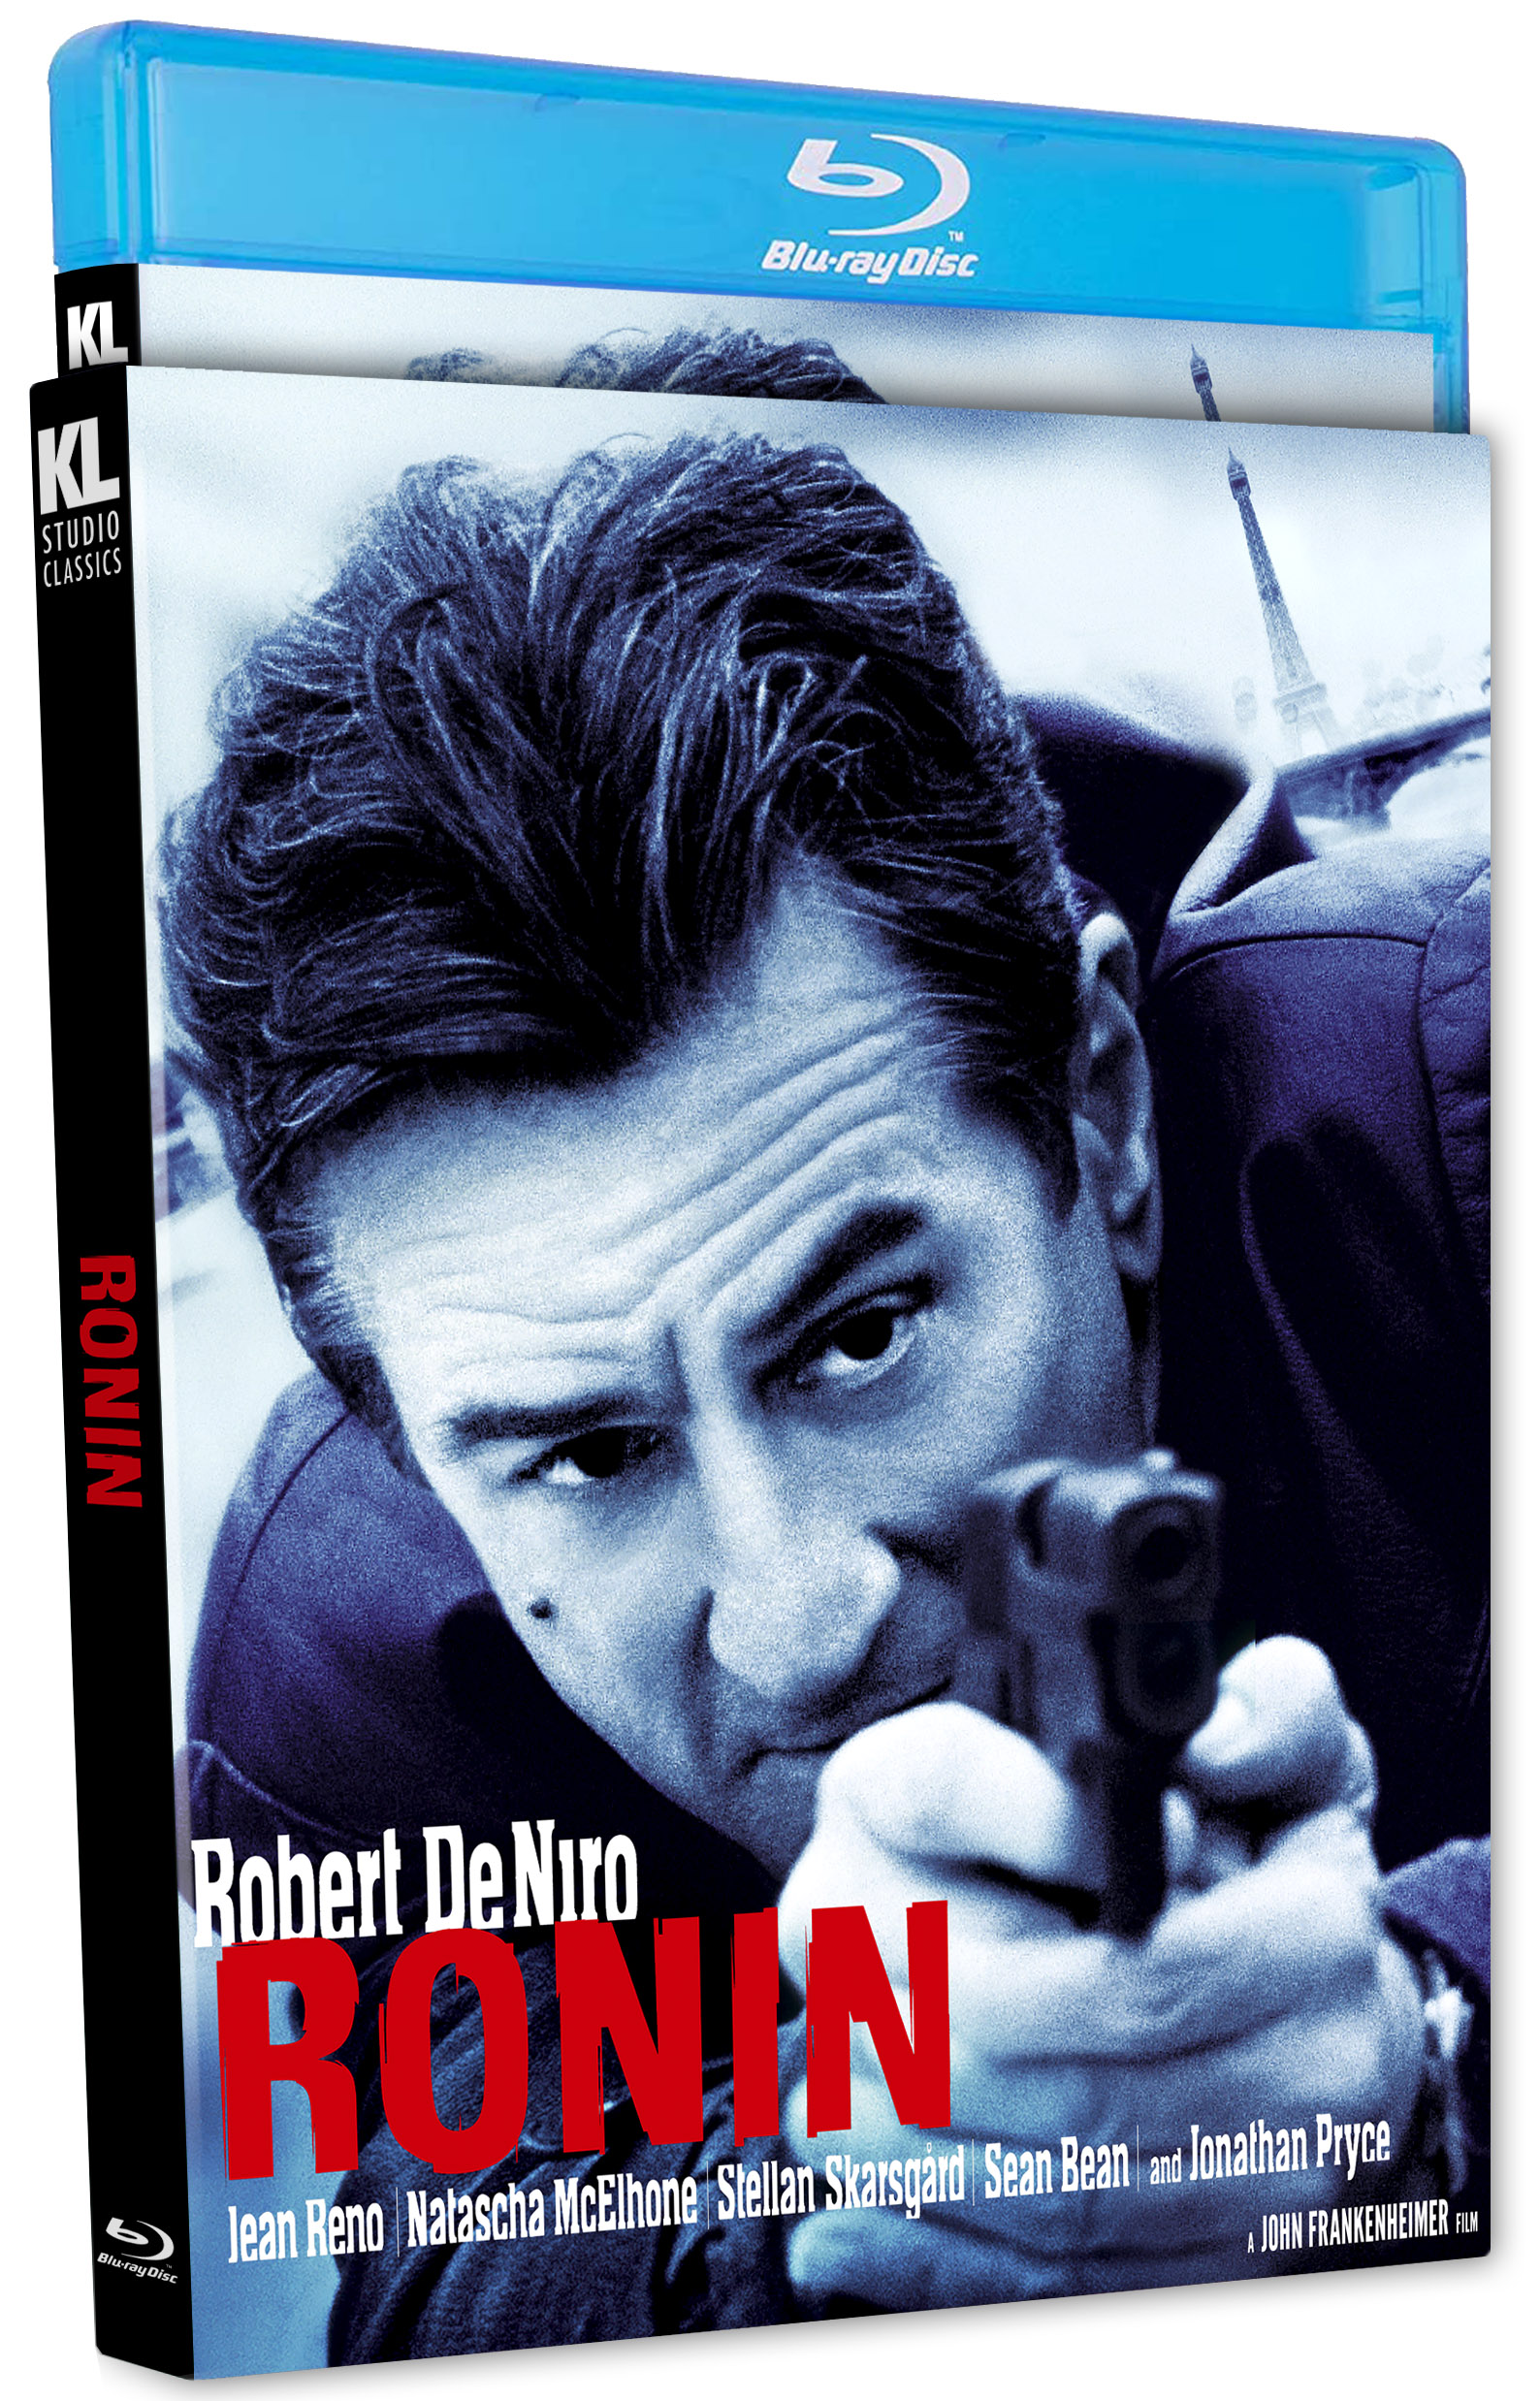 Ronin (4KUHD) (Blu-ray) - Kino Lorber Home Video